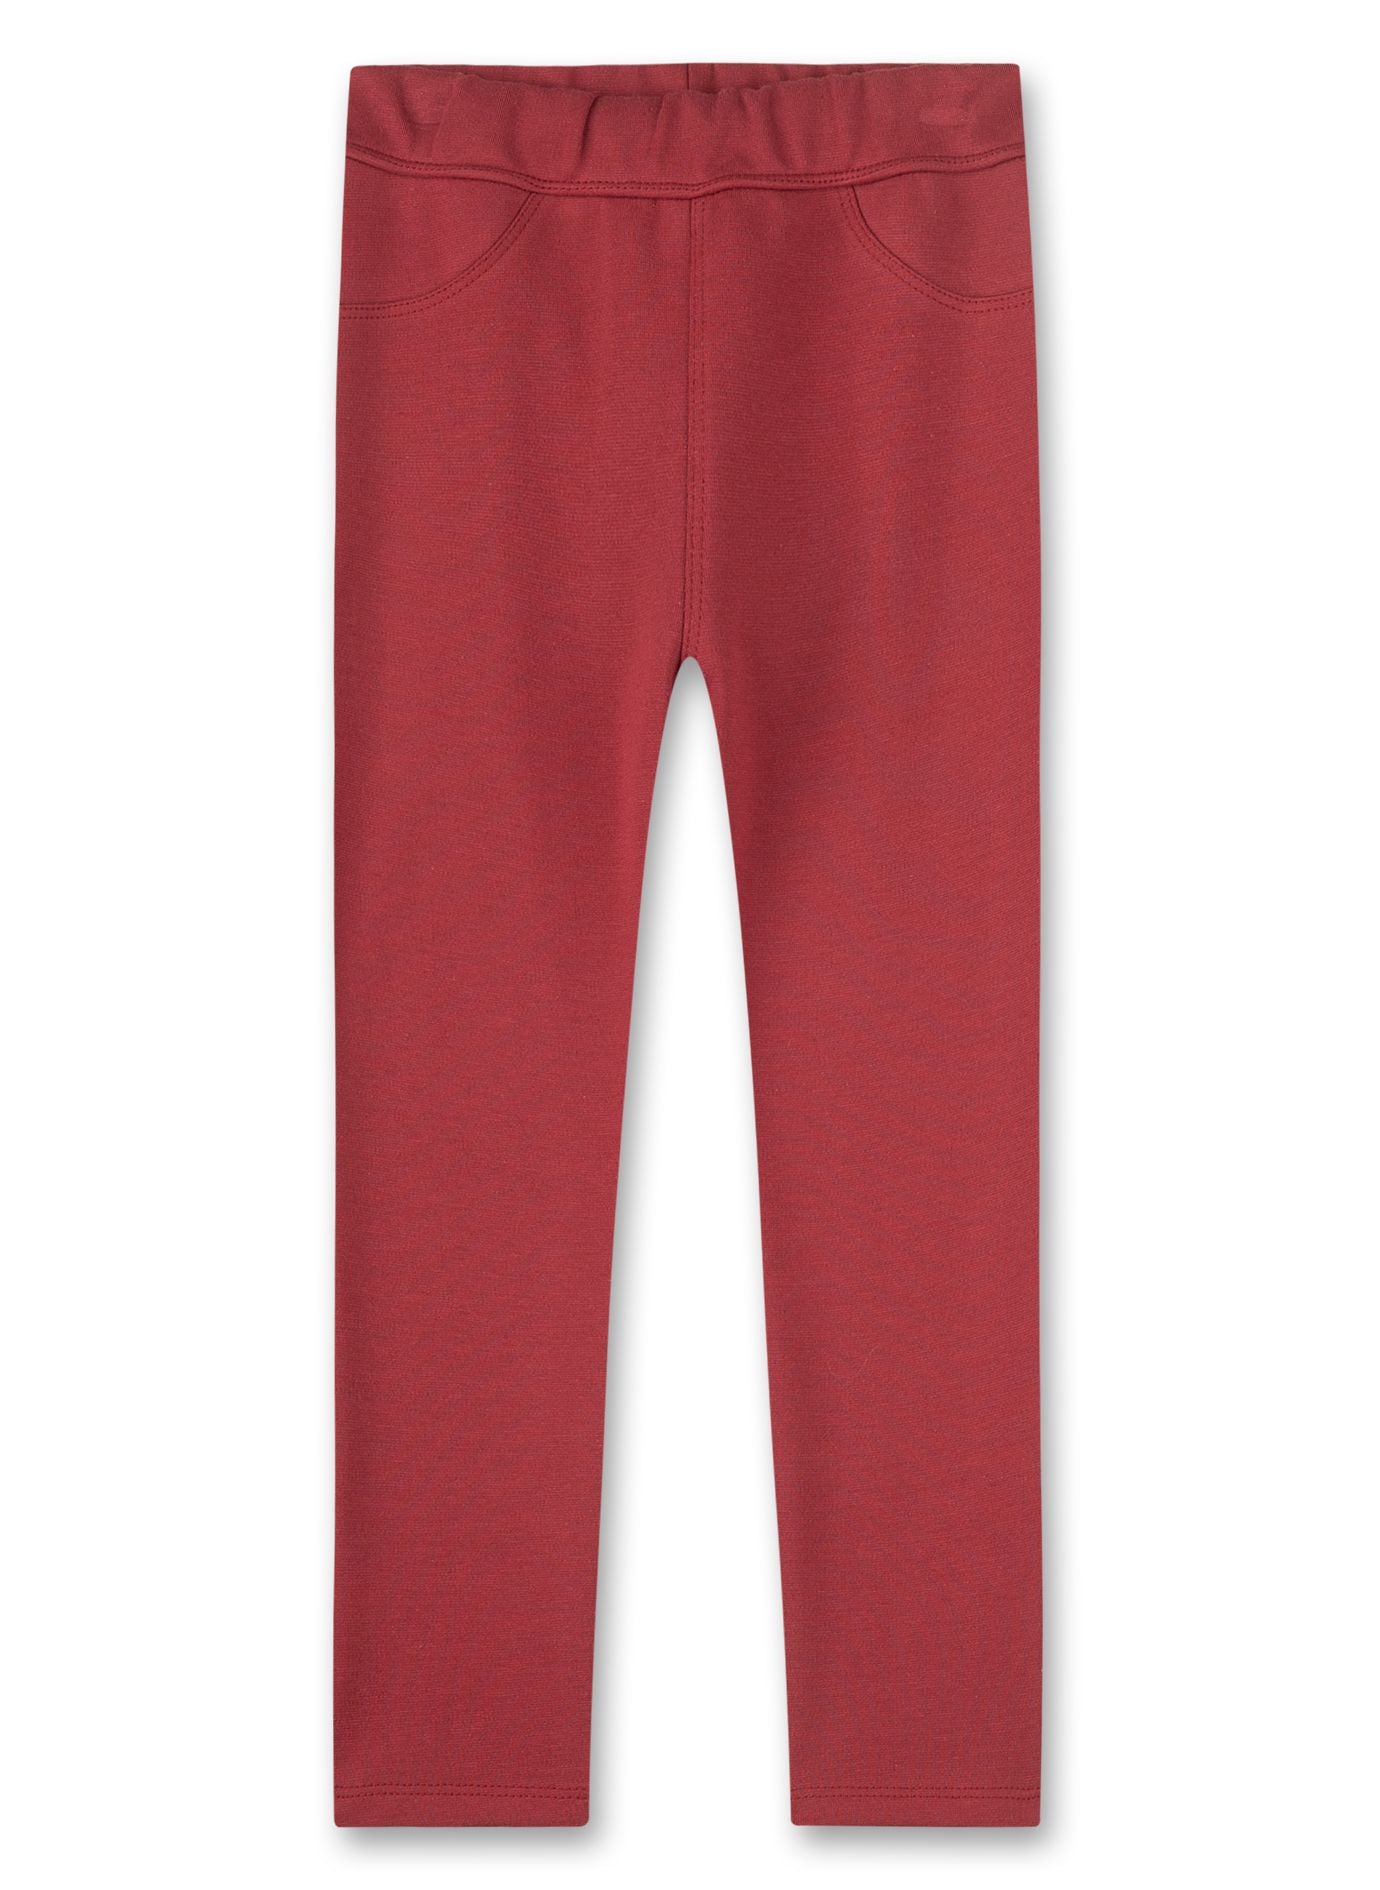 Die robuste Schlupfhose in Rot von Sanetta Pure in einer dezenten Farbigkeit ist ein vielseitiges Kleidungsstück, das sich für zahlreiche Kombinationsmöglichkeiten eignet.